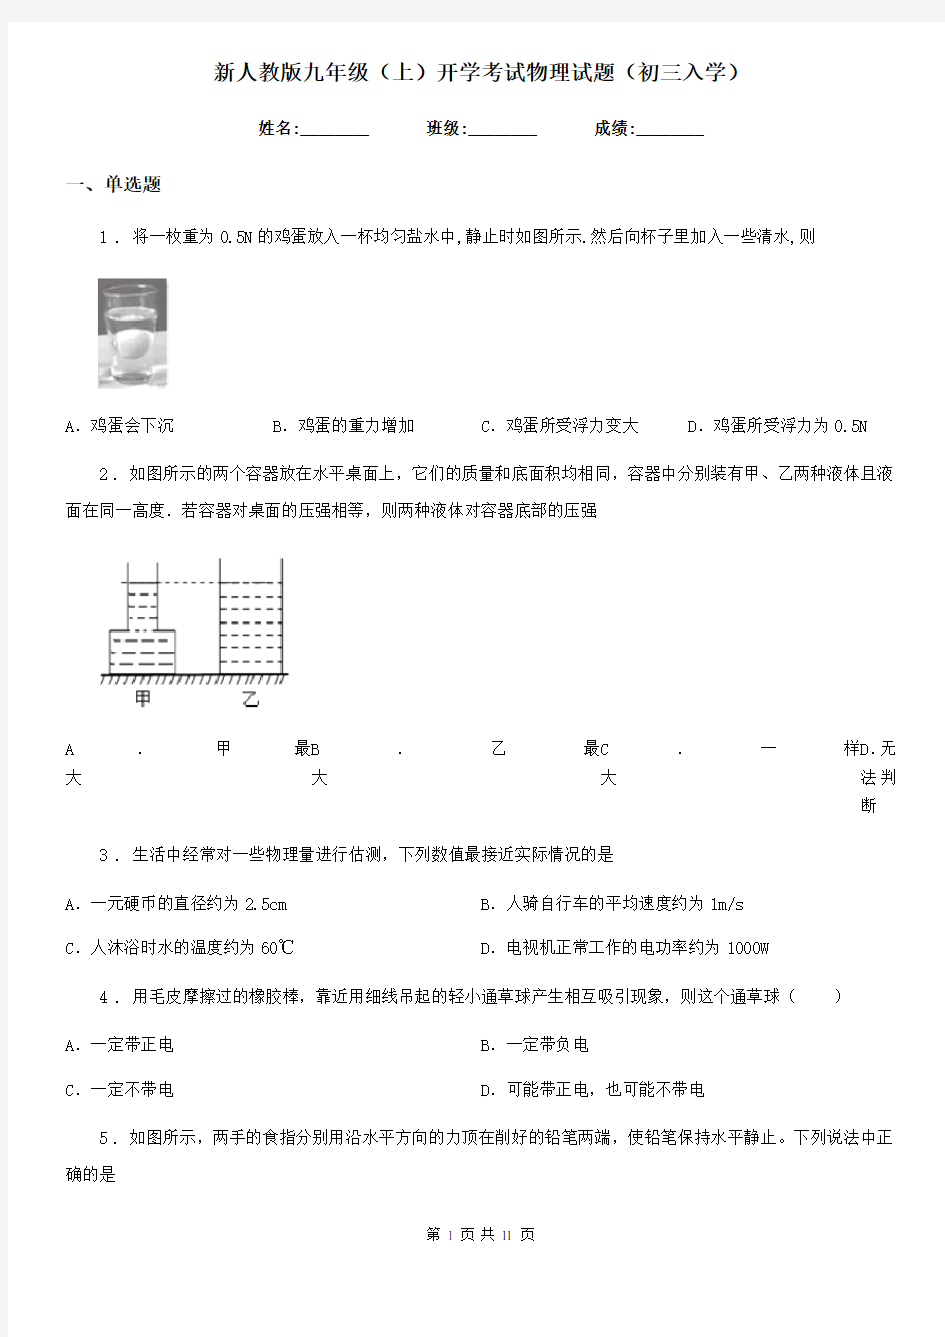 新人教版九年级(上)开学考试物理试题(初三入学)